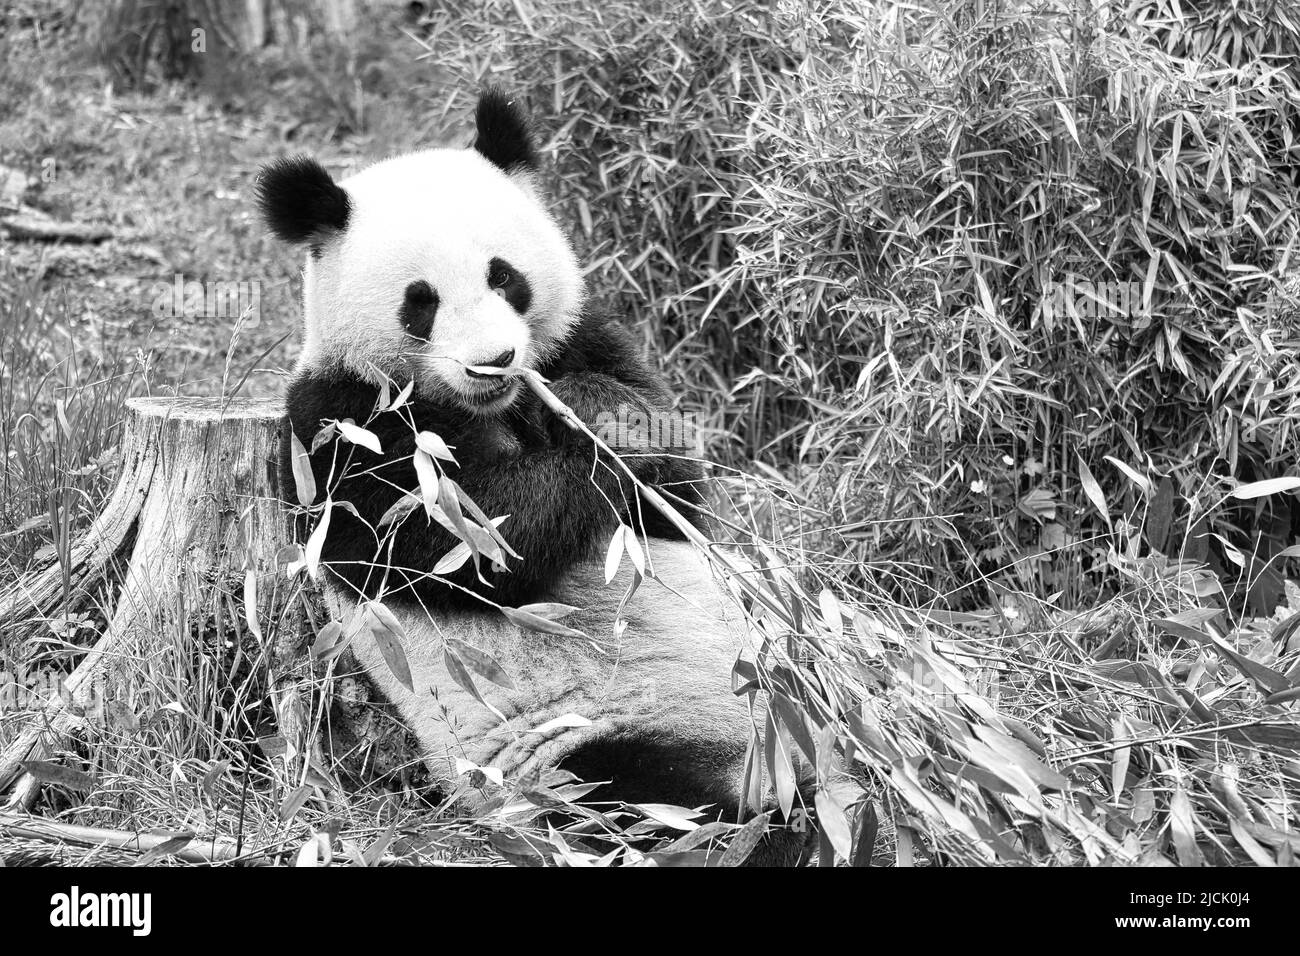 grand panda en noir et blanc, assis mangeant du bambou. Espèces en voie de disparition. Un mammifère noir et blanc qui ressemble à un ours en peluche. Photo profonde d'un bea rare Banque D'Images